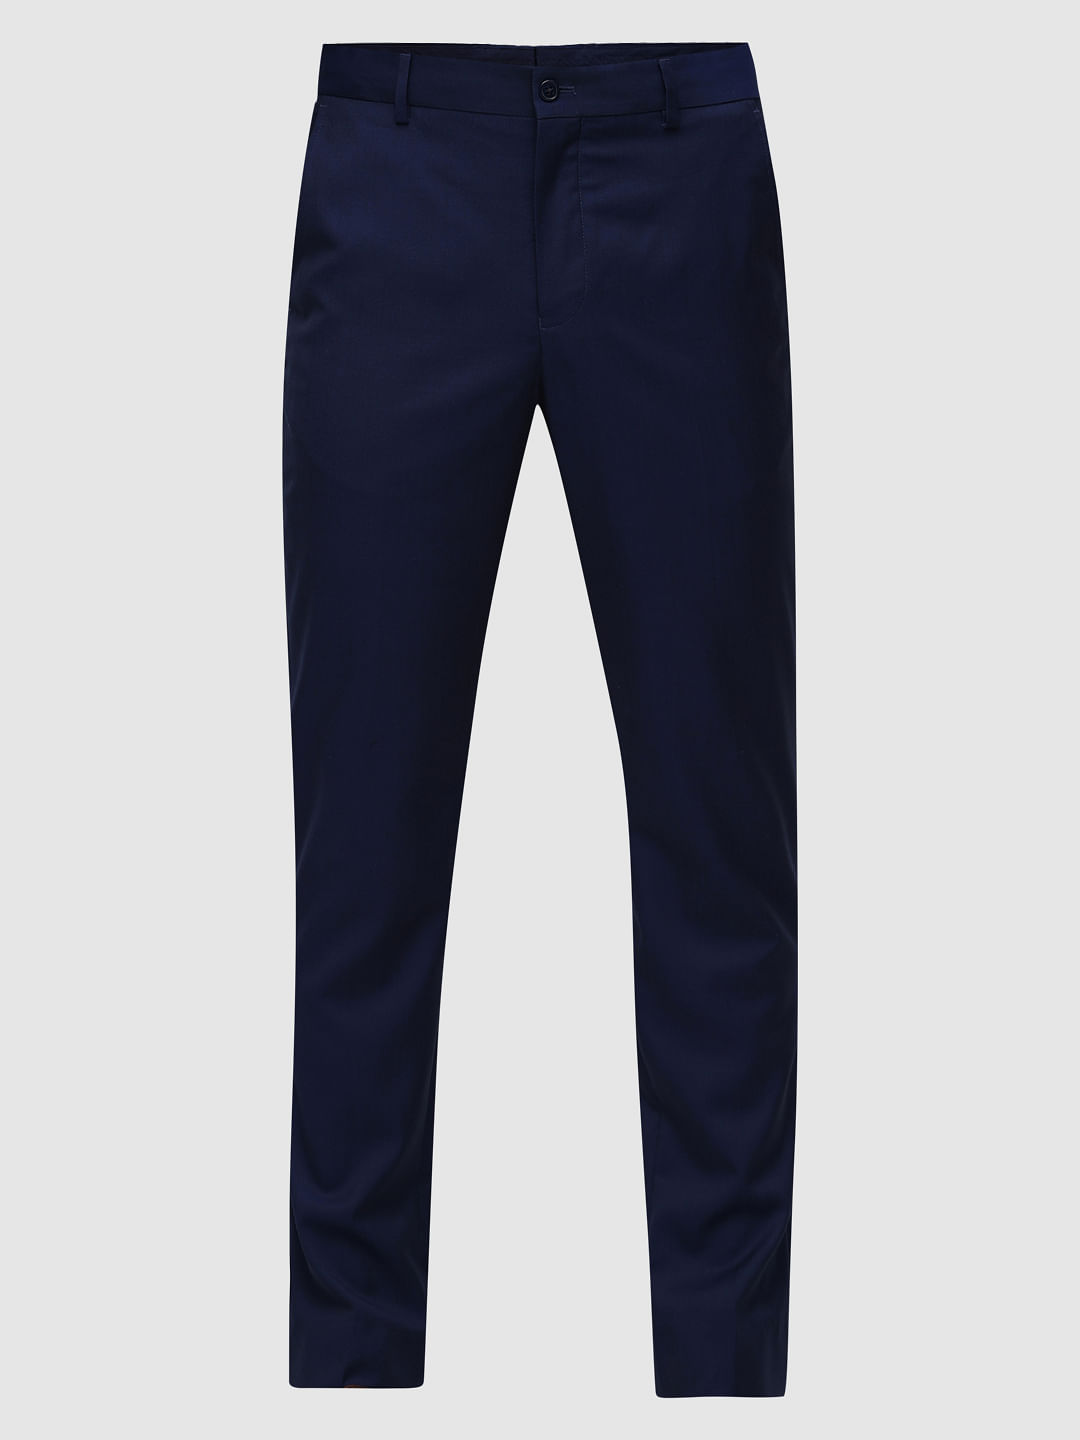 Men Suits Blue 3 Piece Slim Fit Two Button Wedding Groom Party Wear Coat  Pant, Men Blue Suit, Blue Slim Fit Peak Lapel Striped Suit - Etsy Norway